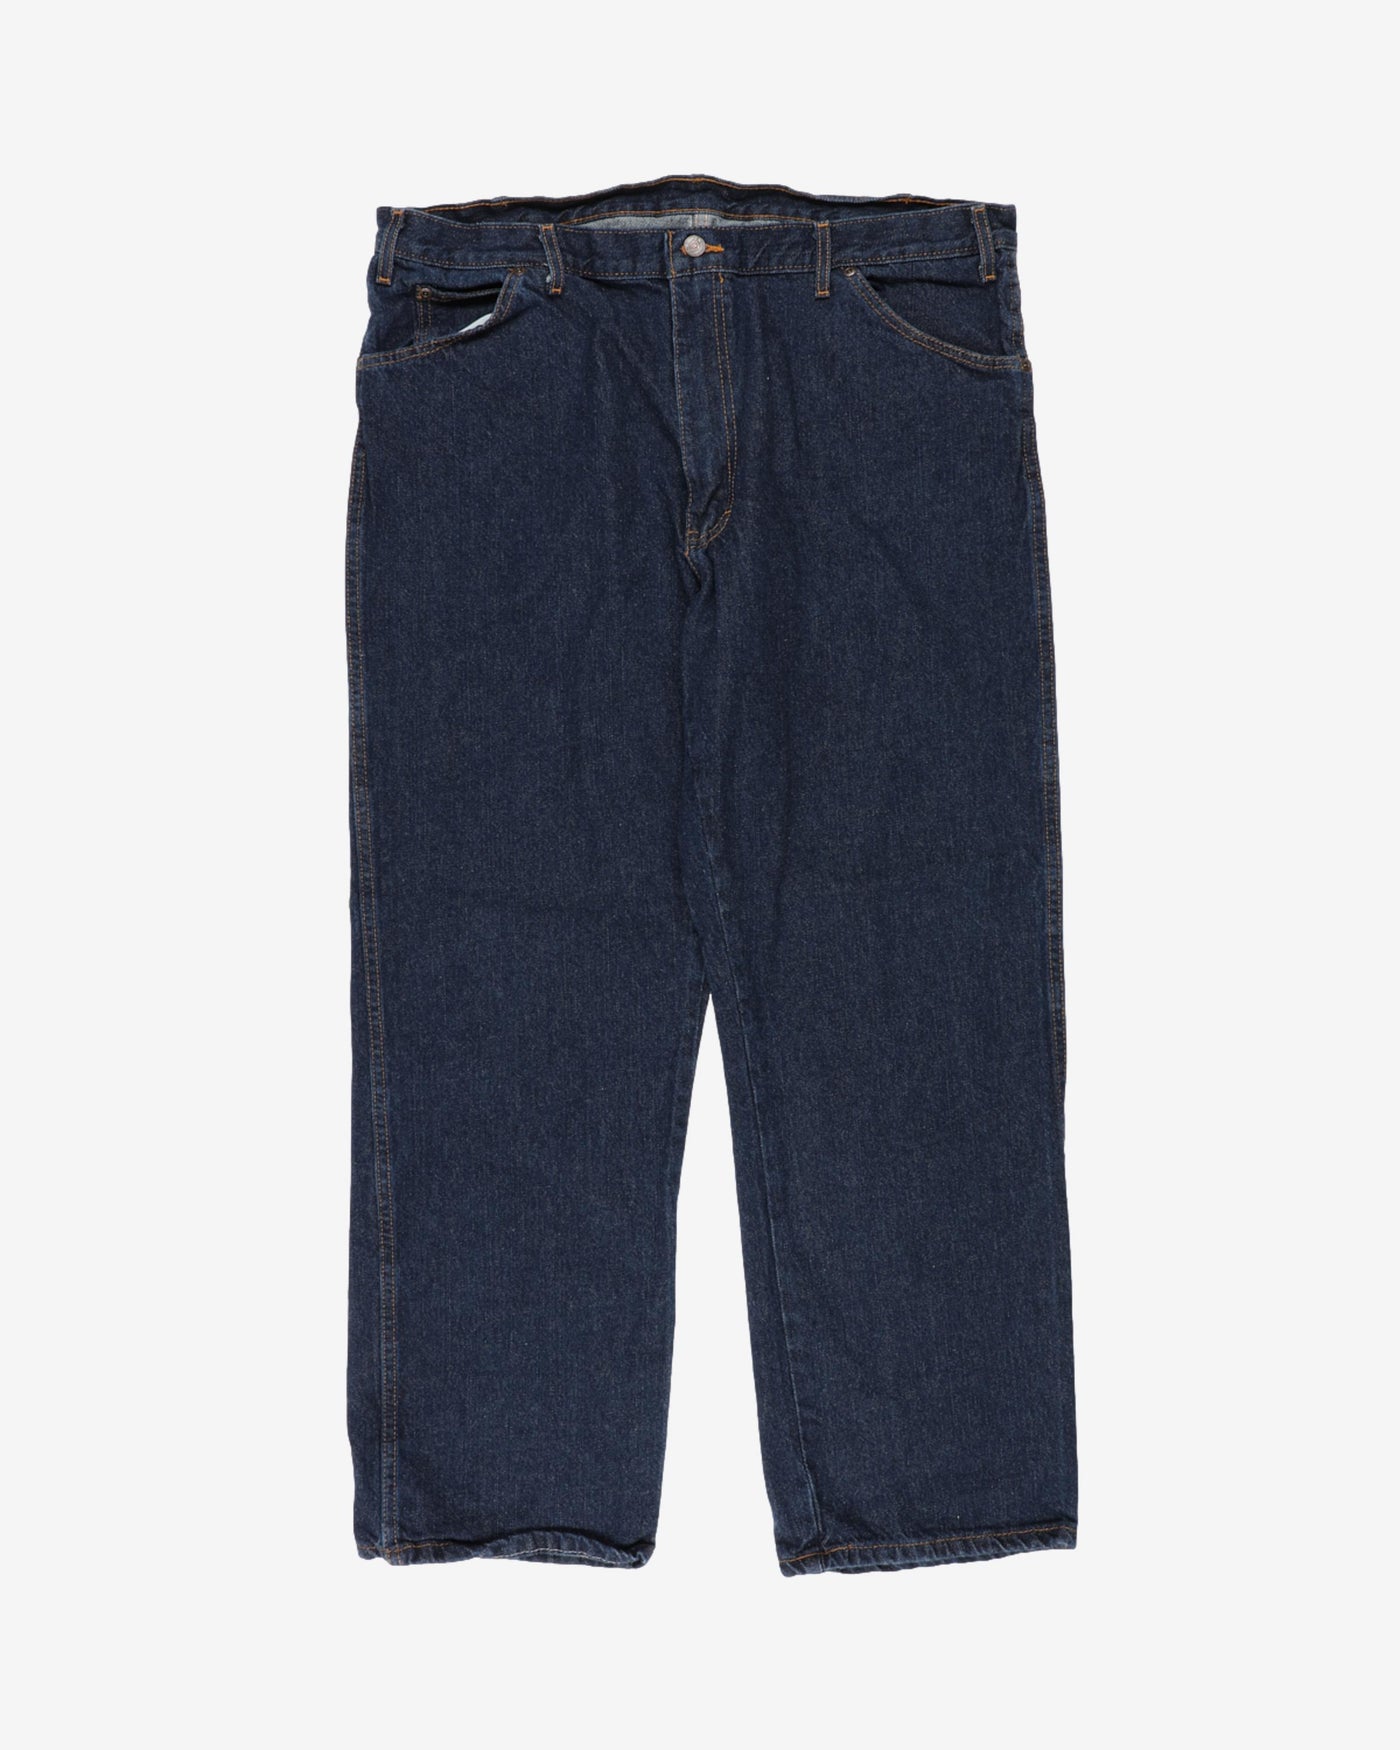 dickies blue workwear denim jeans - w40 l31